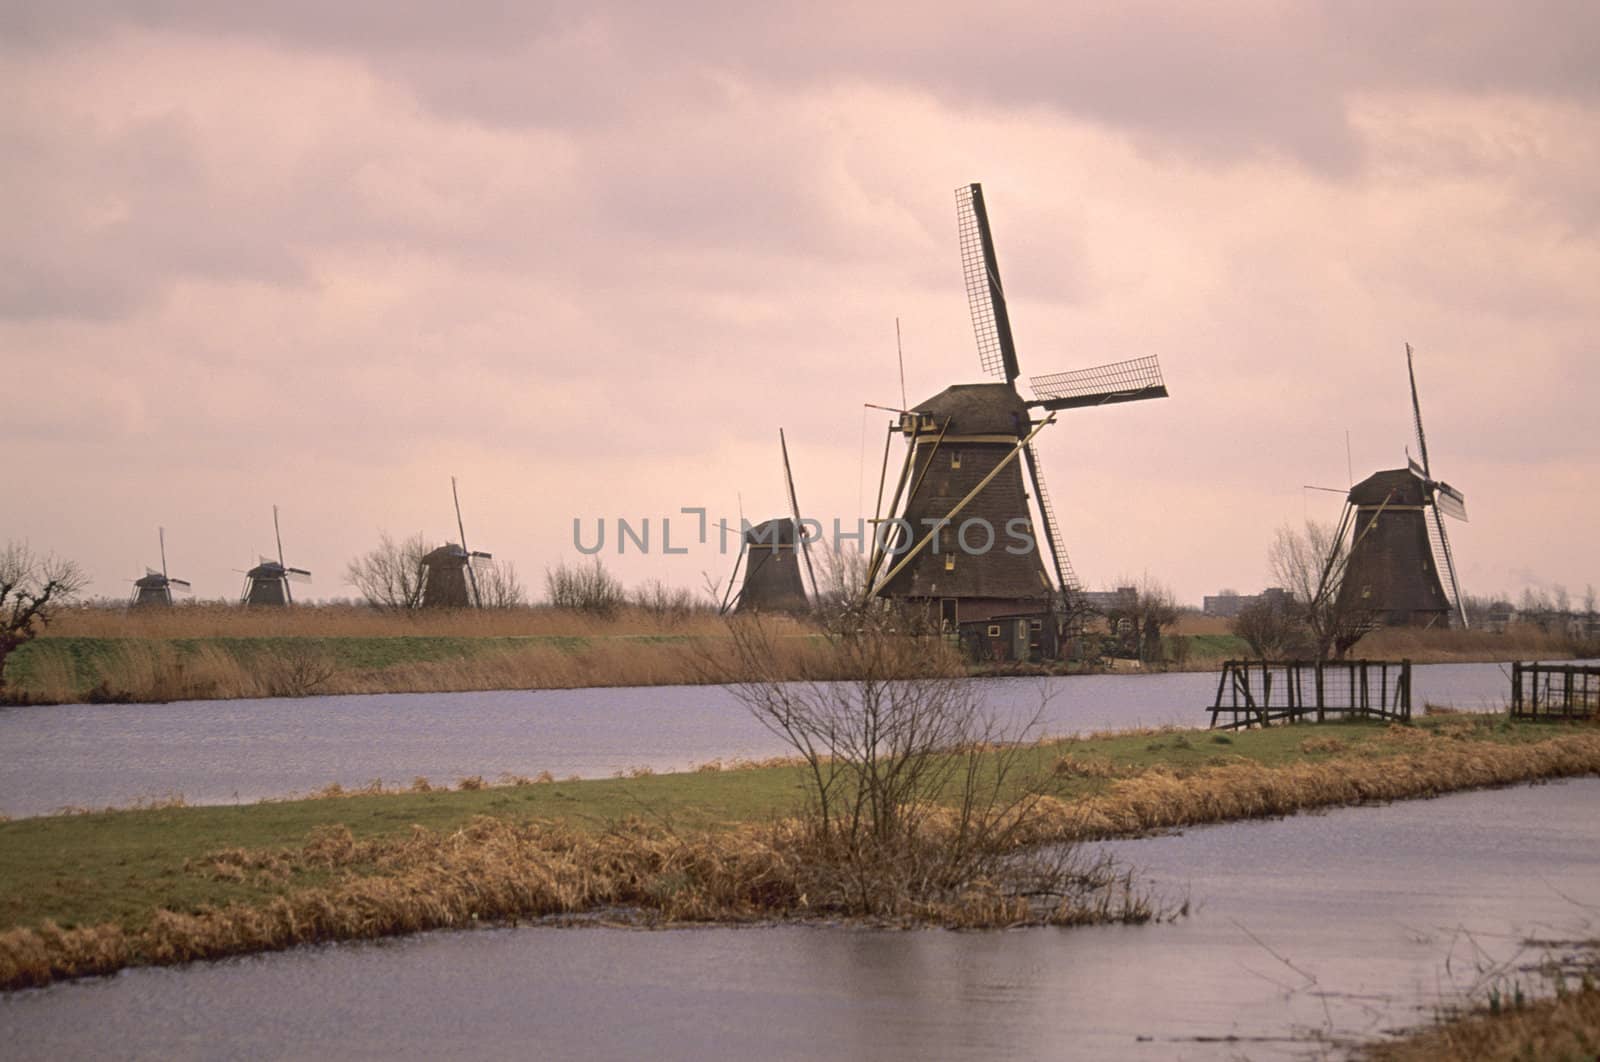 UNESCO Heritage site - Kinderdijk - Elshout in the Netherlands at dawn.